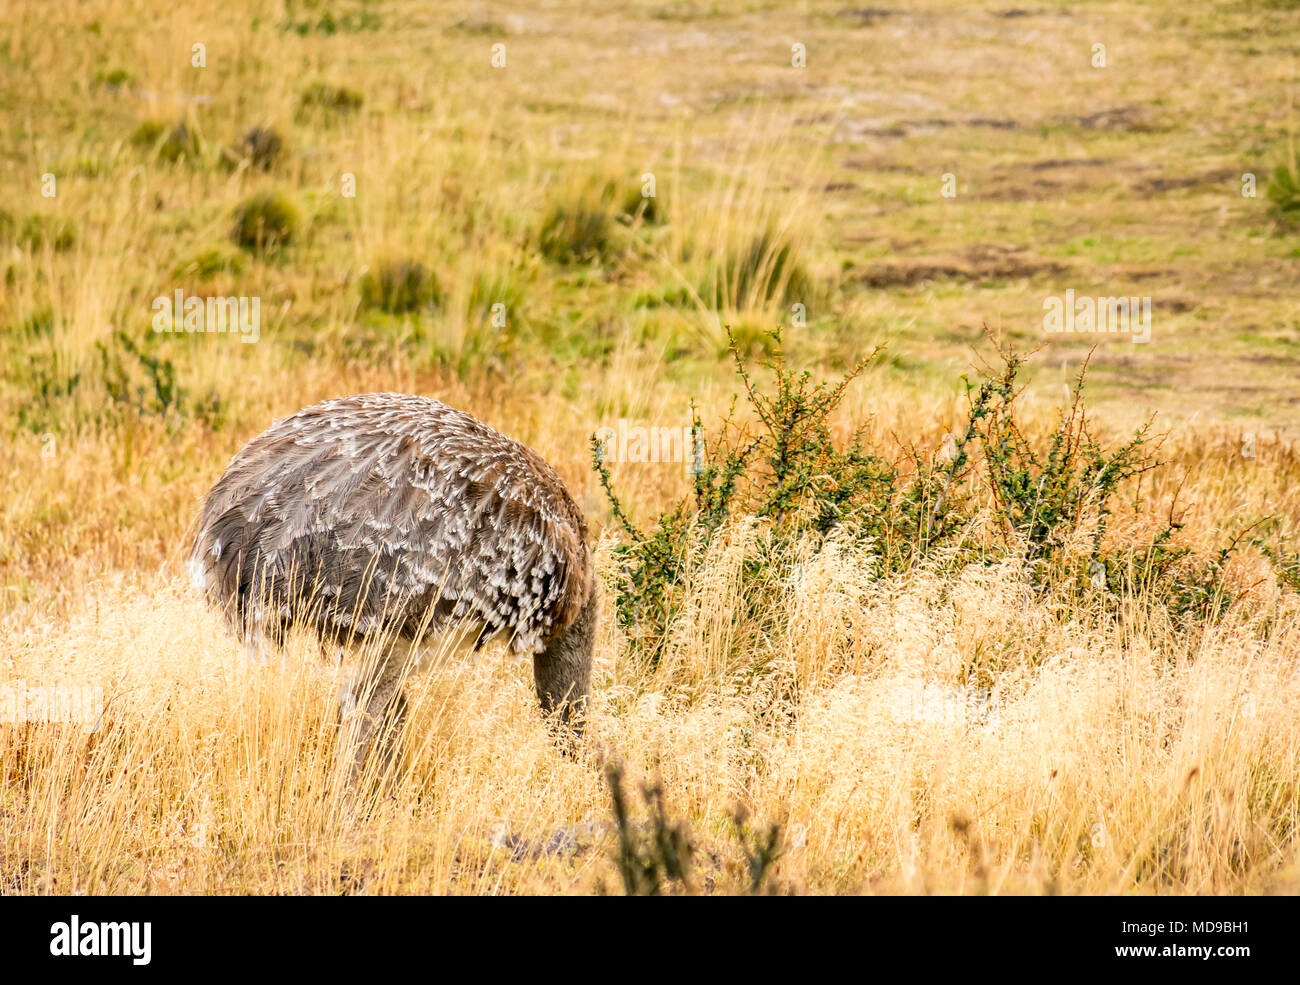 Ñandú de Darwin, o ñandú, Rhea pennata, alimentándose con la cabeza escondida en la hierba, Parque Nacional Torres del Paine, Patagonia, Chile, Sudamérica Foto de stock